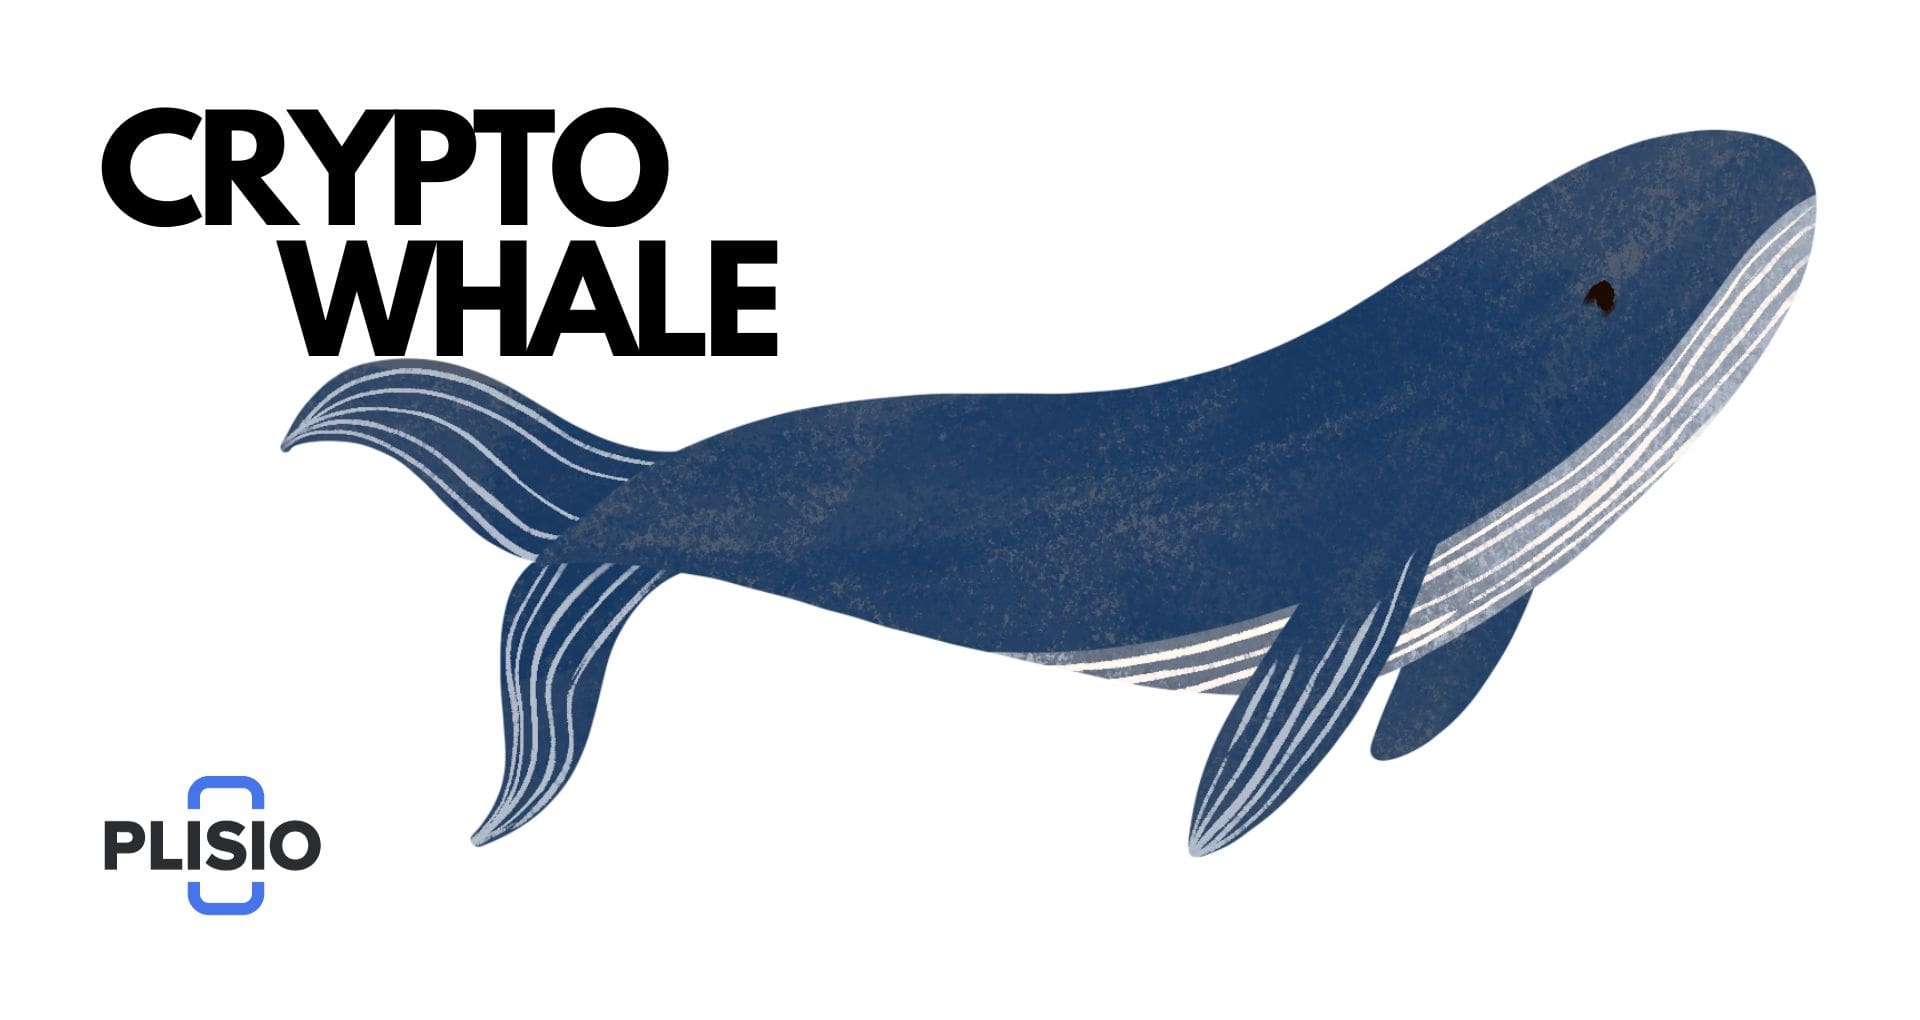 อิทธิพลของ Crypto Whale: การถอดรหัสผลกระทบต่อแนวโน้มตลาด